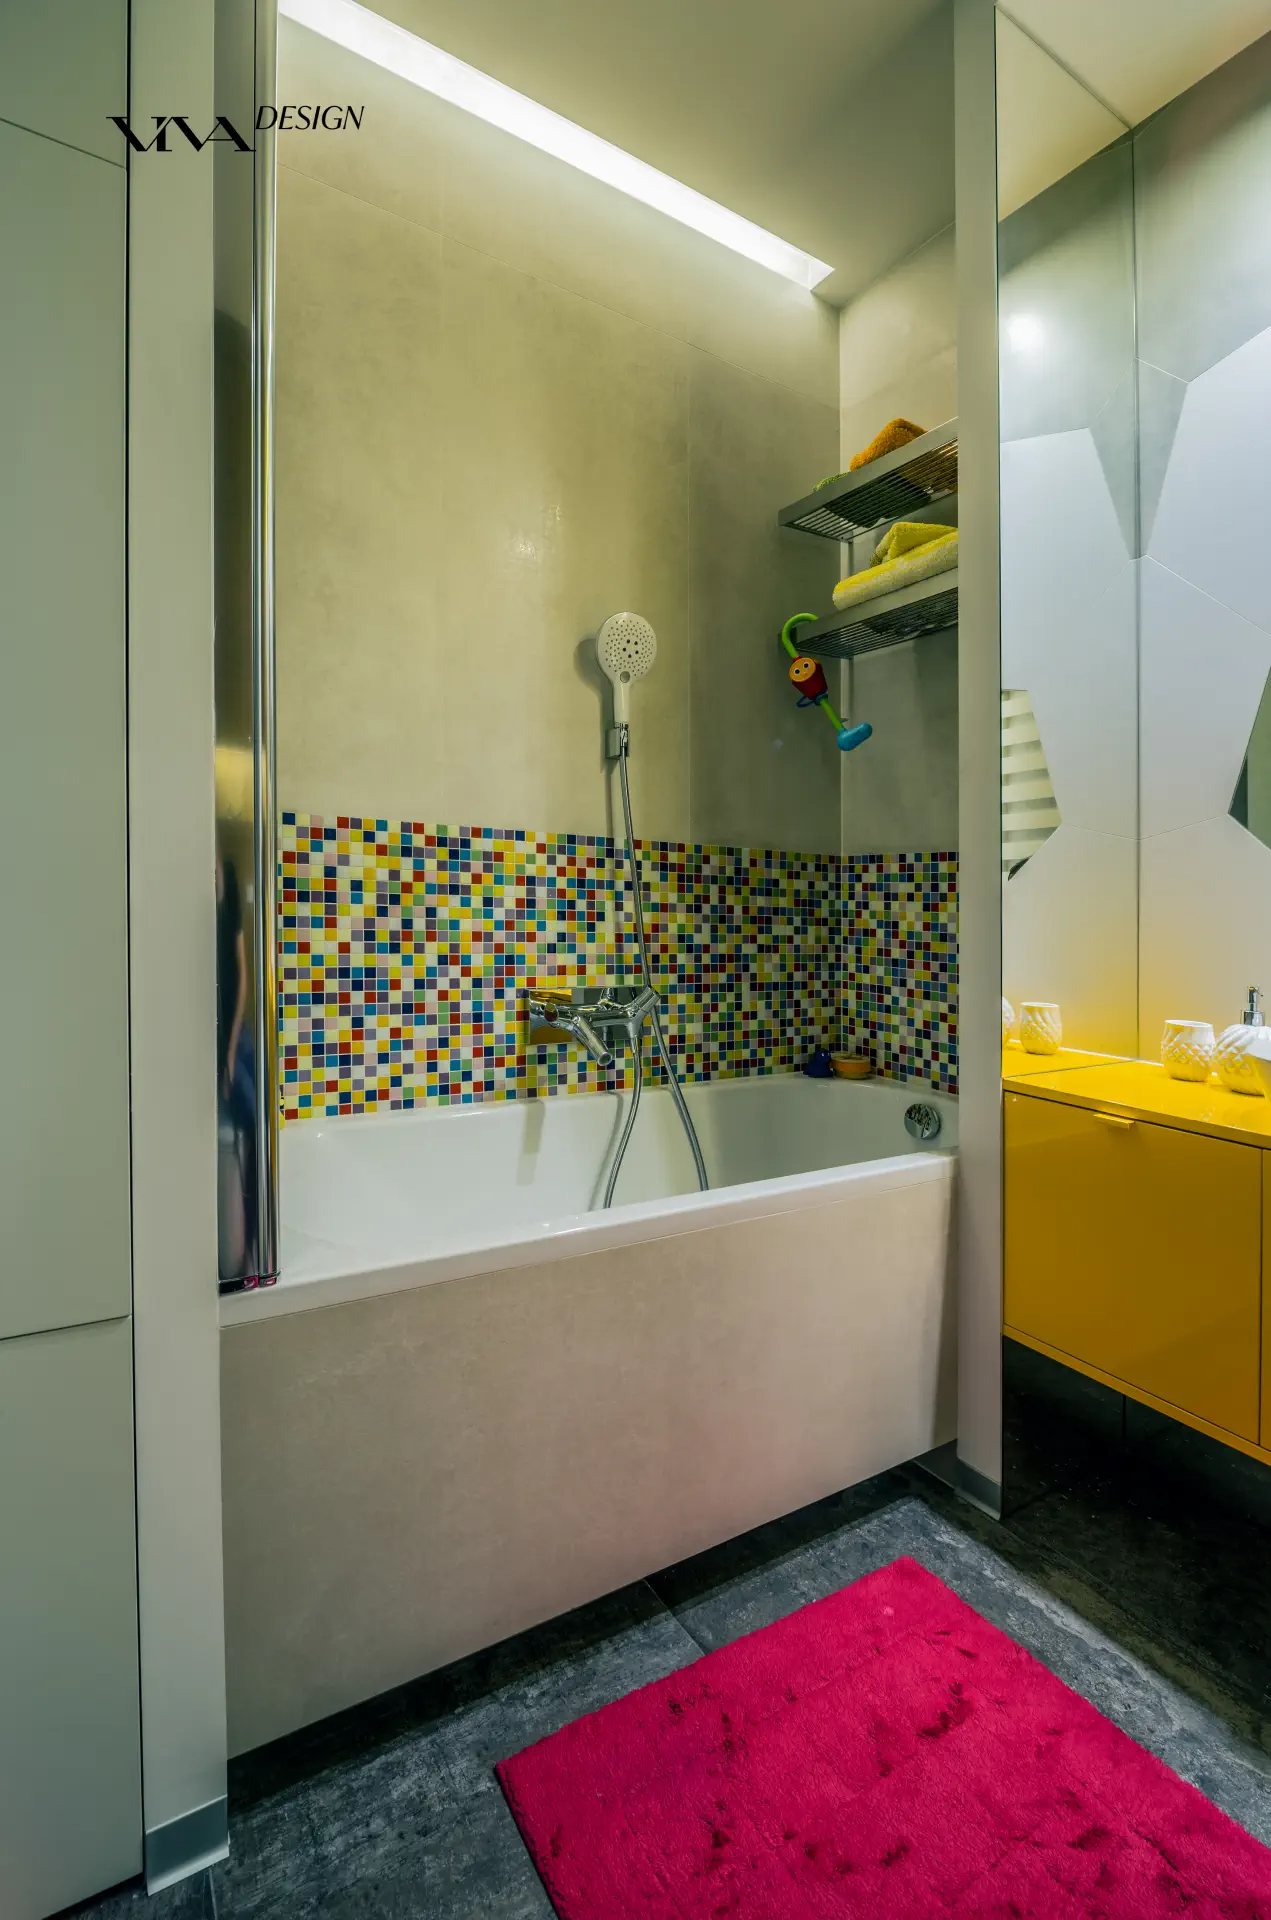 Kolorowa mozaika w łazience nad wanna oraz żółtą szafką